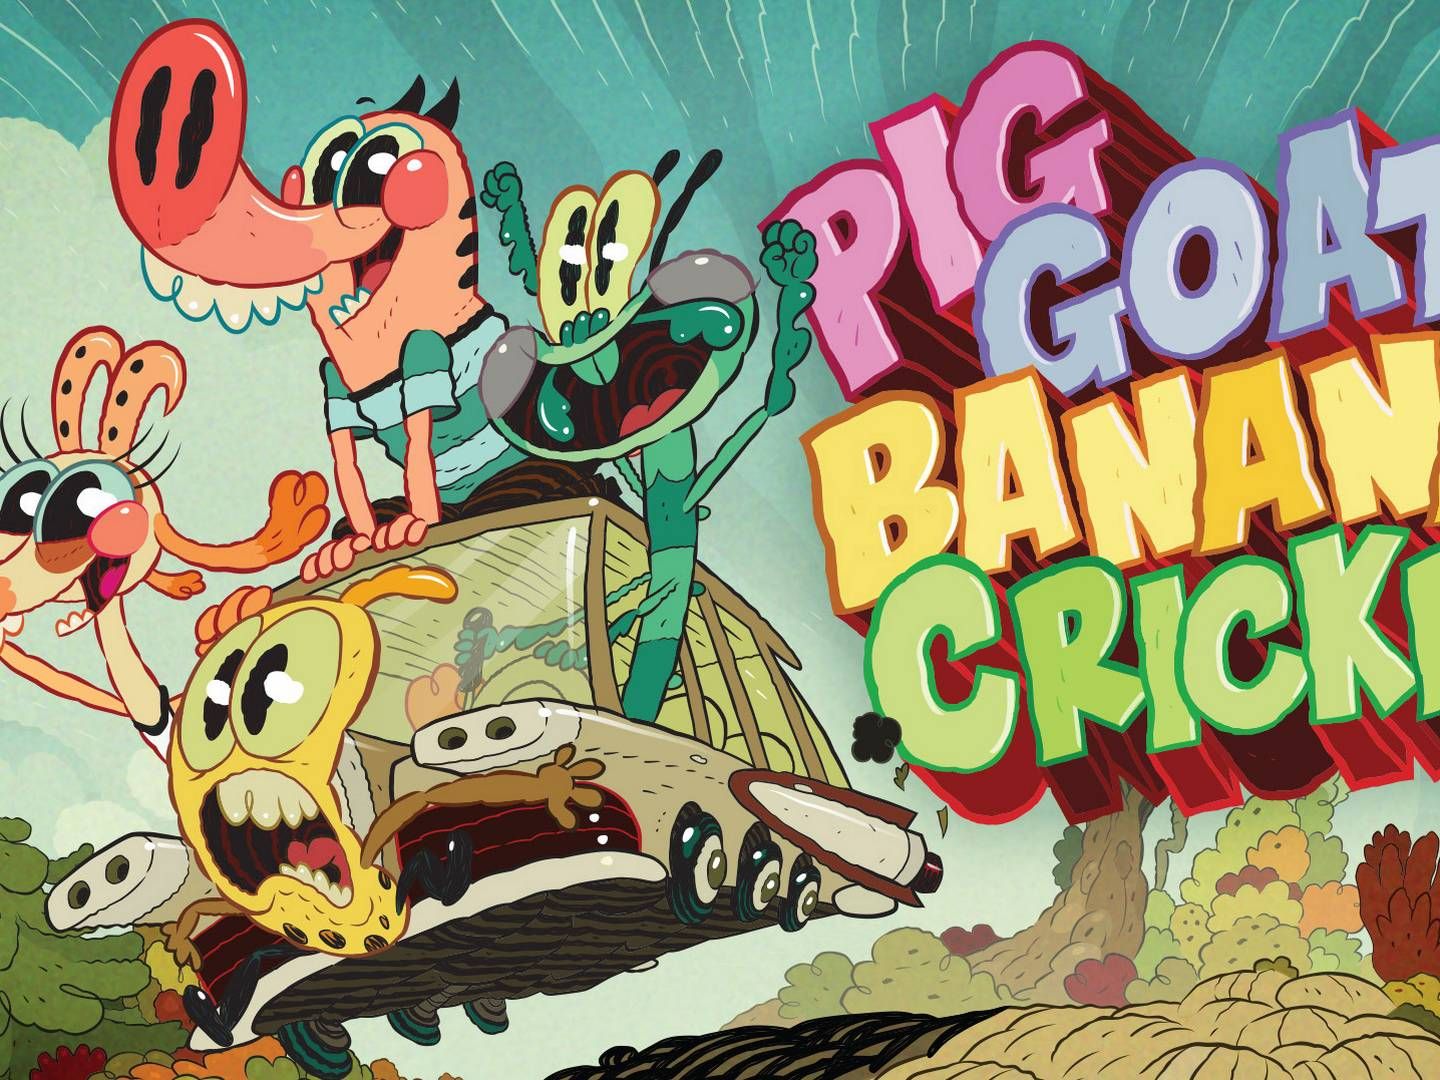 Pig Goat Banana Cricket er blandt programmerne på Nicktoons. | Foto: PR/Viacom